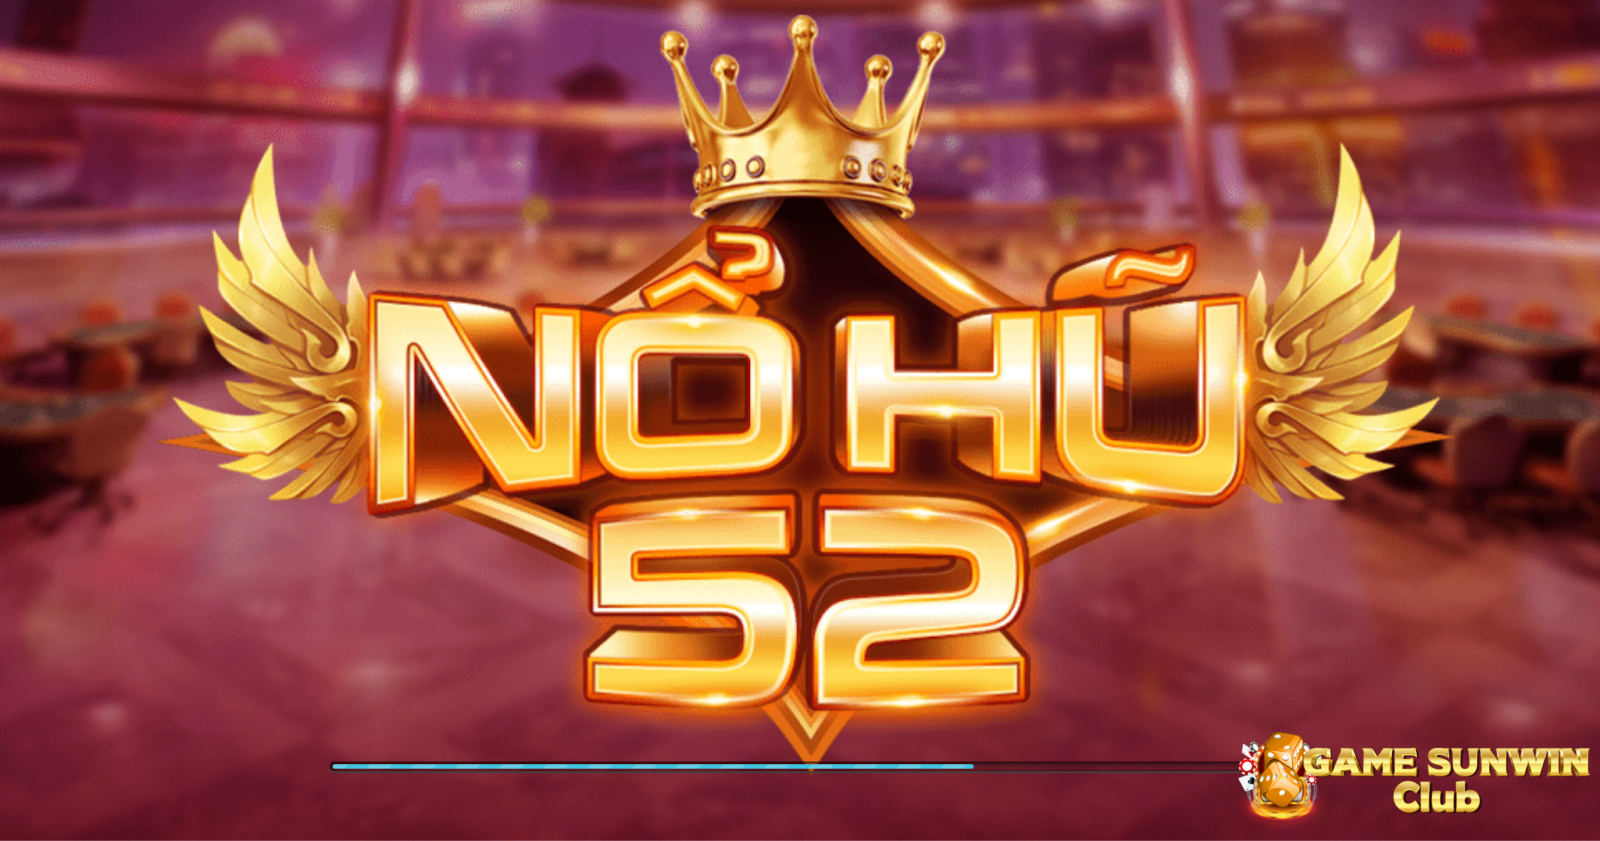 Nohu52.net chính là một siêu phẩm game đổi thưởng hàng đầu